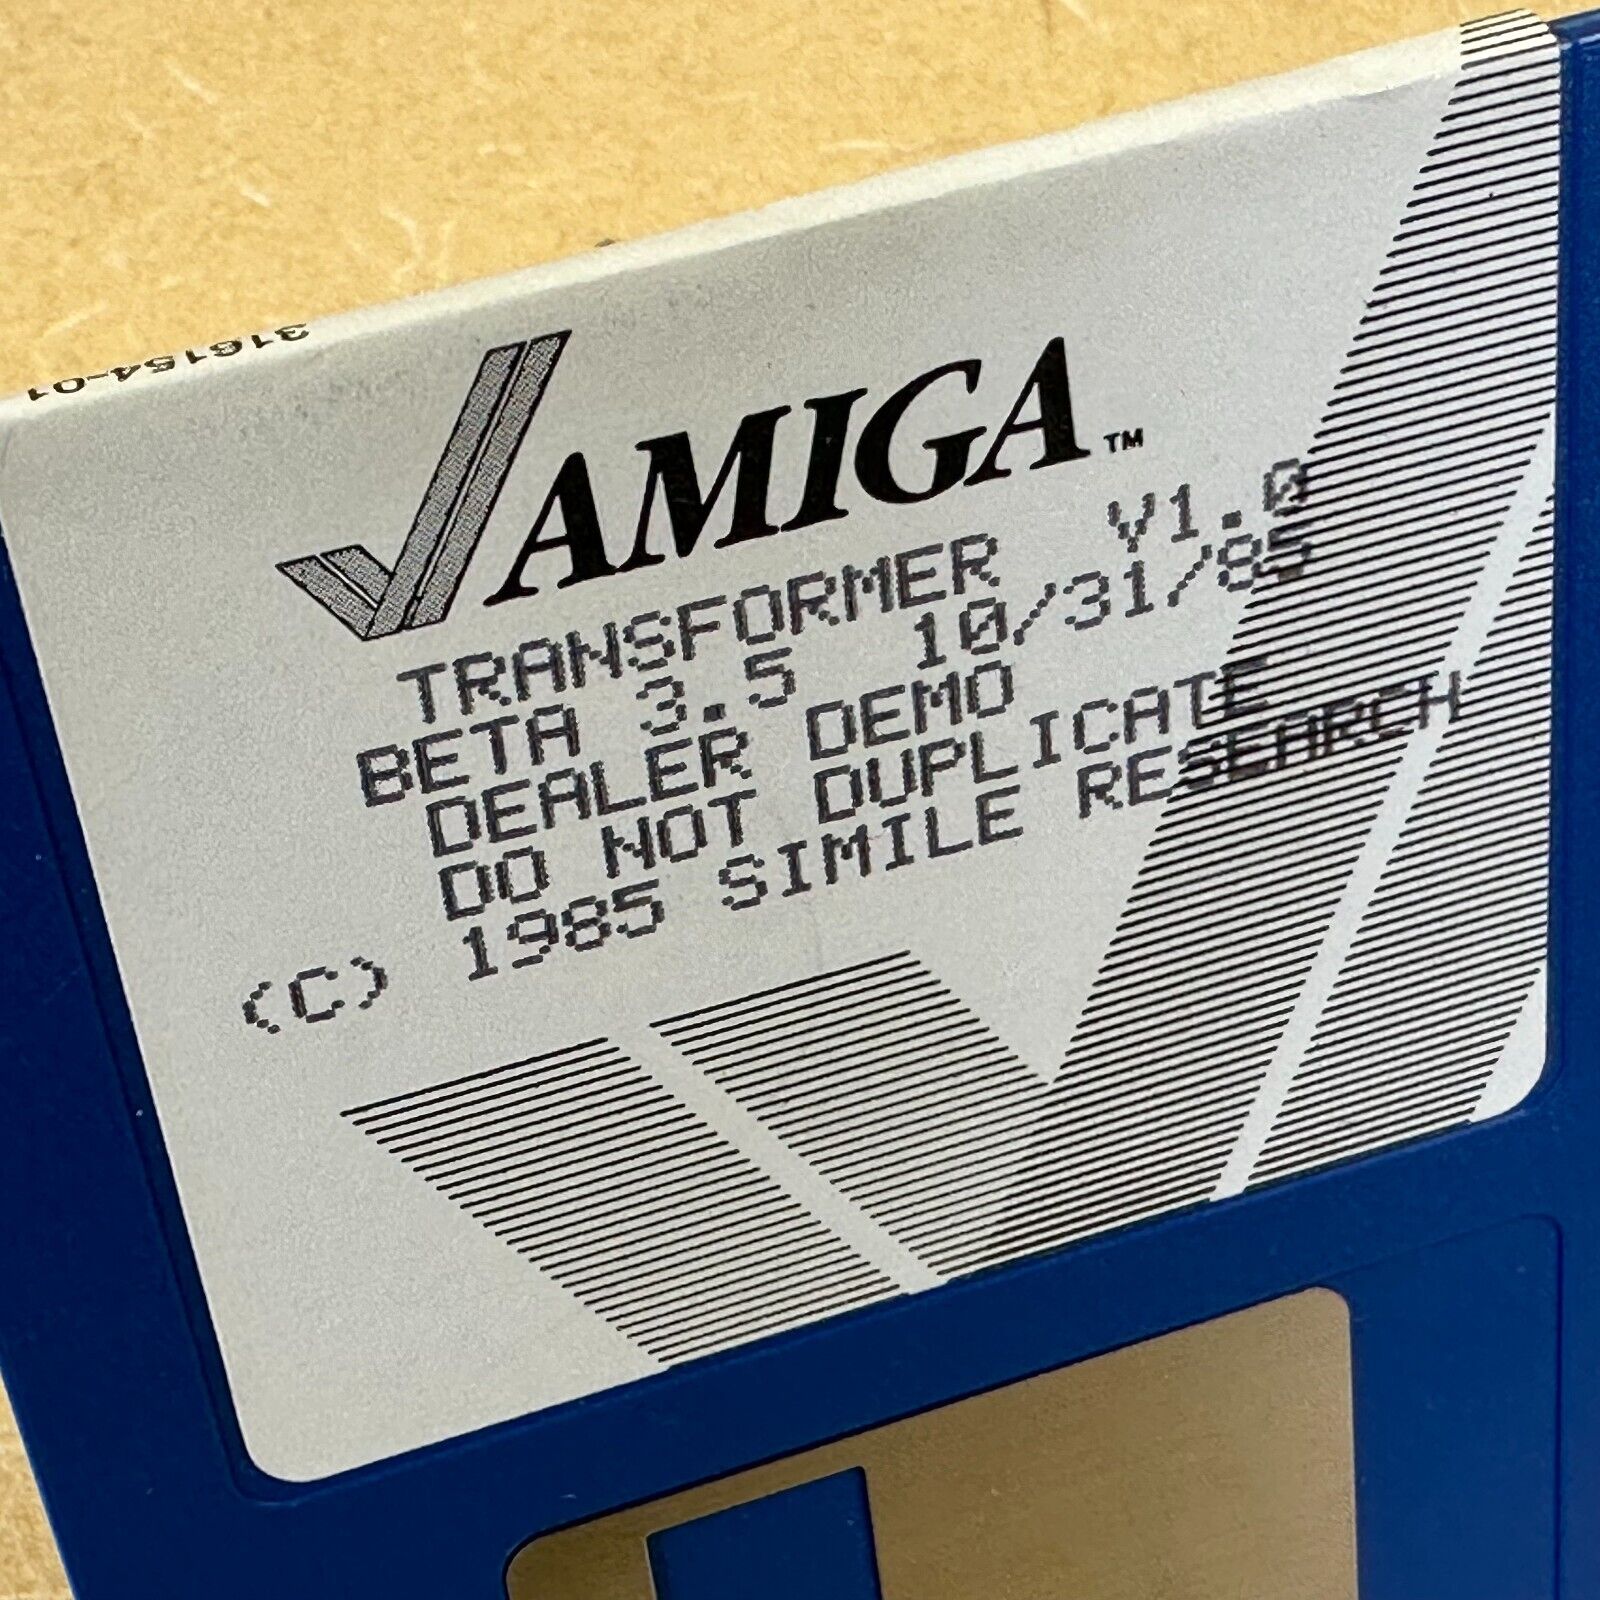 DEALER DEMO Disk TRANSFORMER V1.0 BETA 3.5 AMIGA Computers 1985 SIMILI RESEARCH